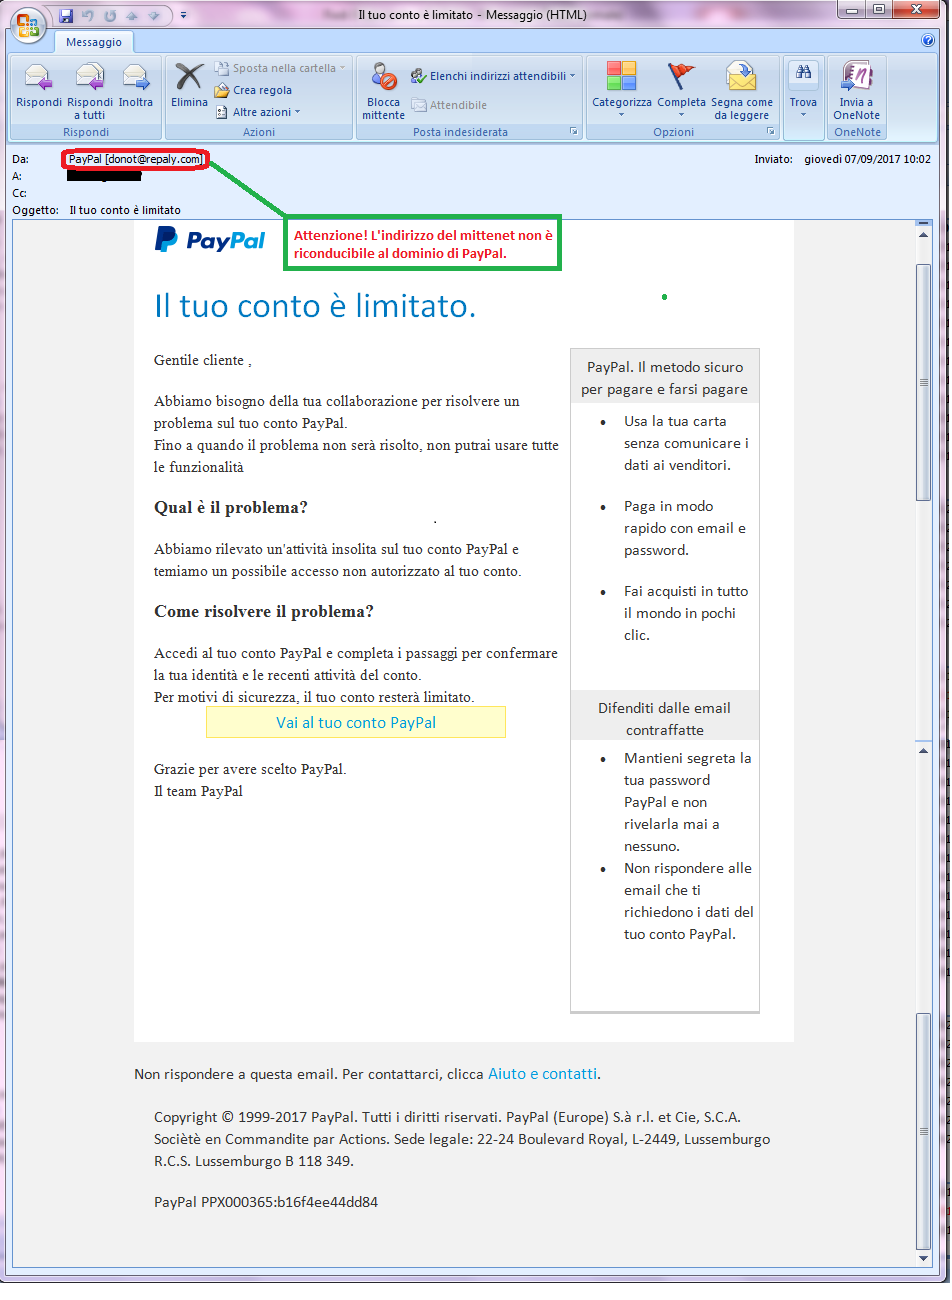 Clicca per ingrandire l'immagine della falsa e-mail di PayPal, che cerca di rubare i codici della PayPal.